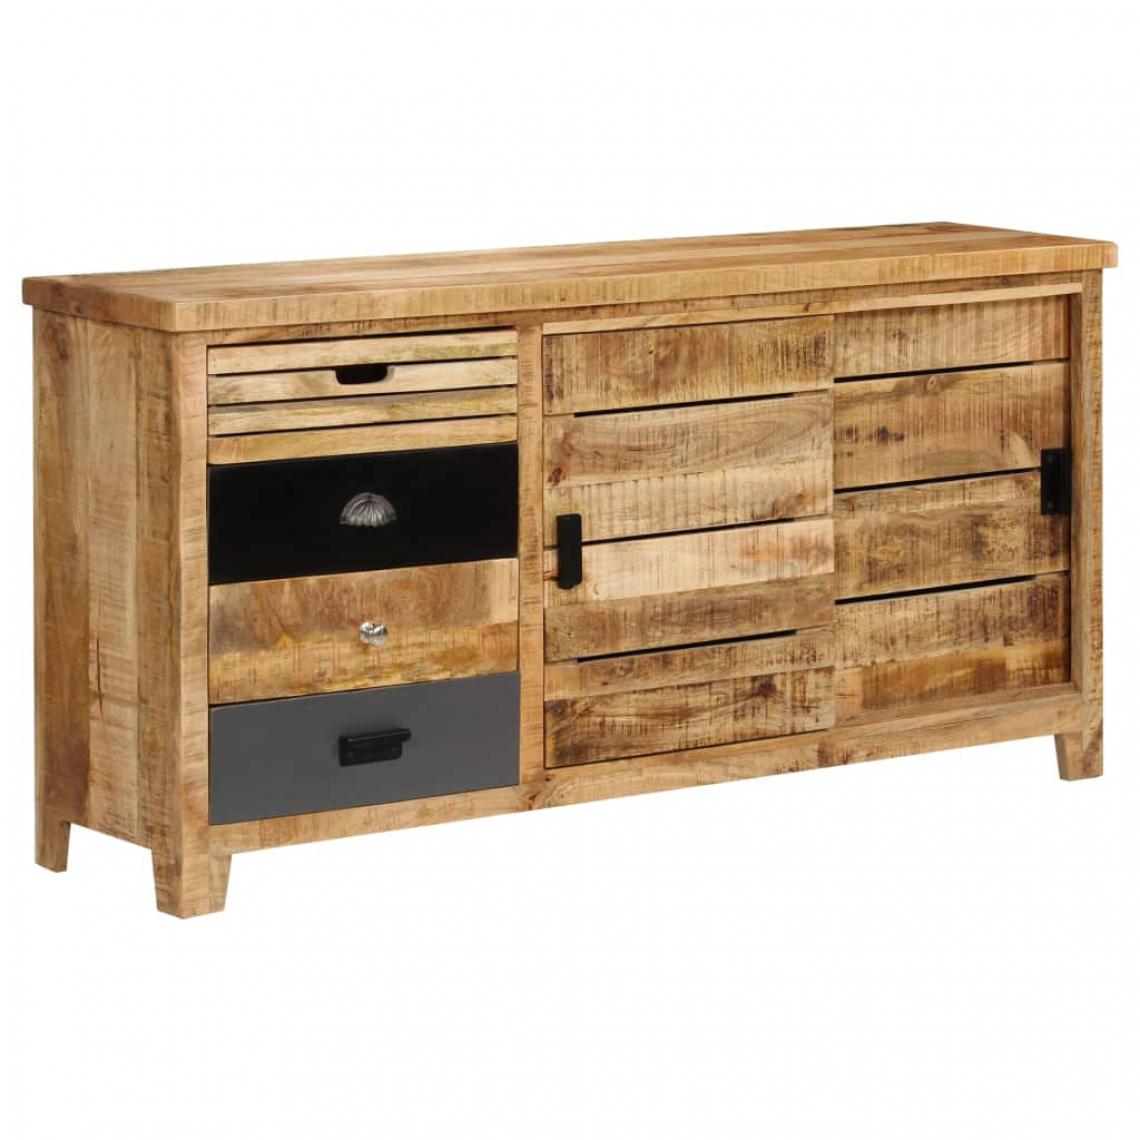 Helloshop26 - Buffet bahut armoire console meuble de rangement bois de manguier solide 160 cm 4402074 - Consoles